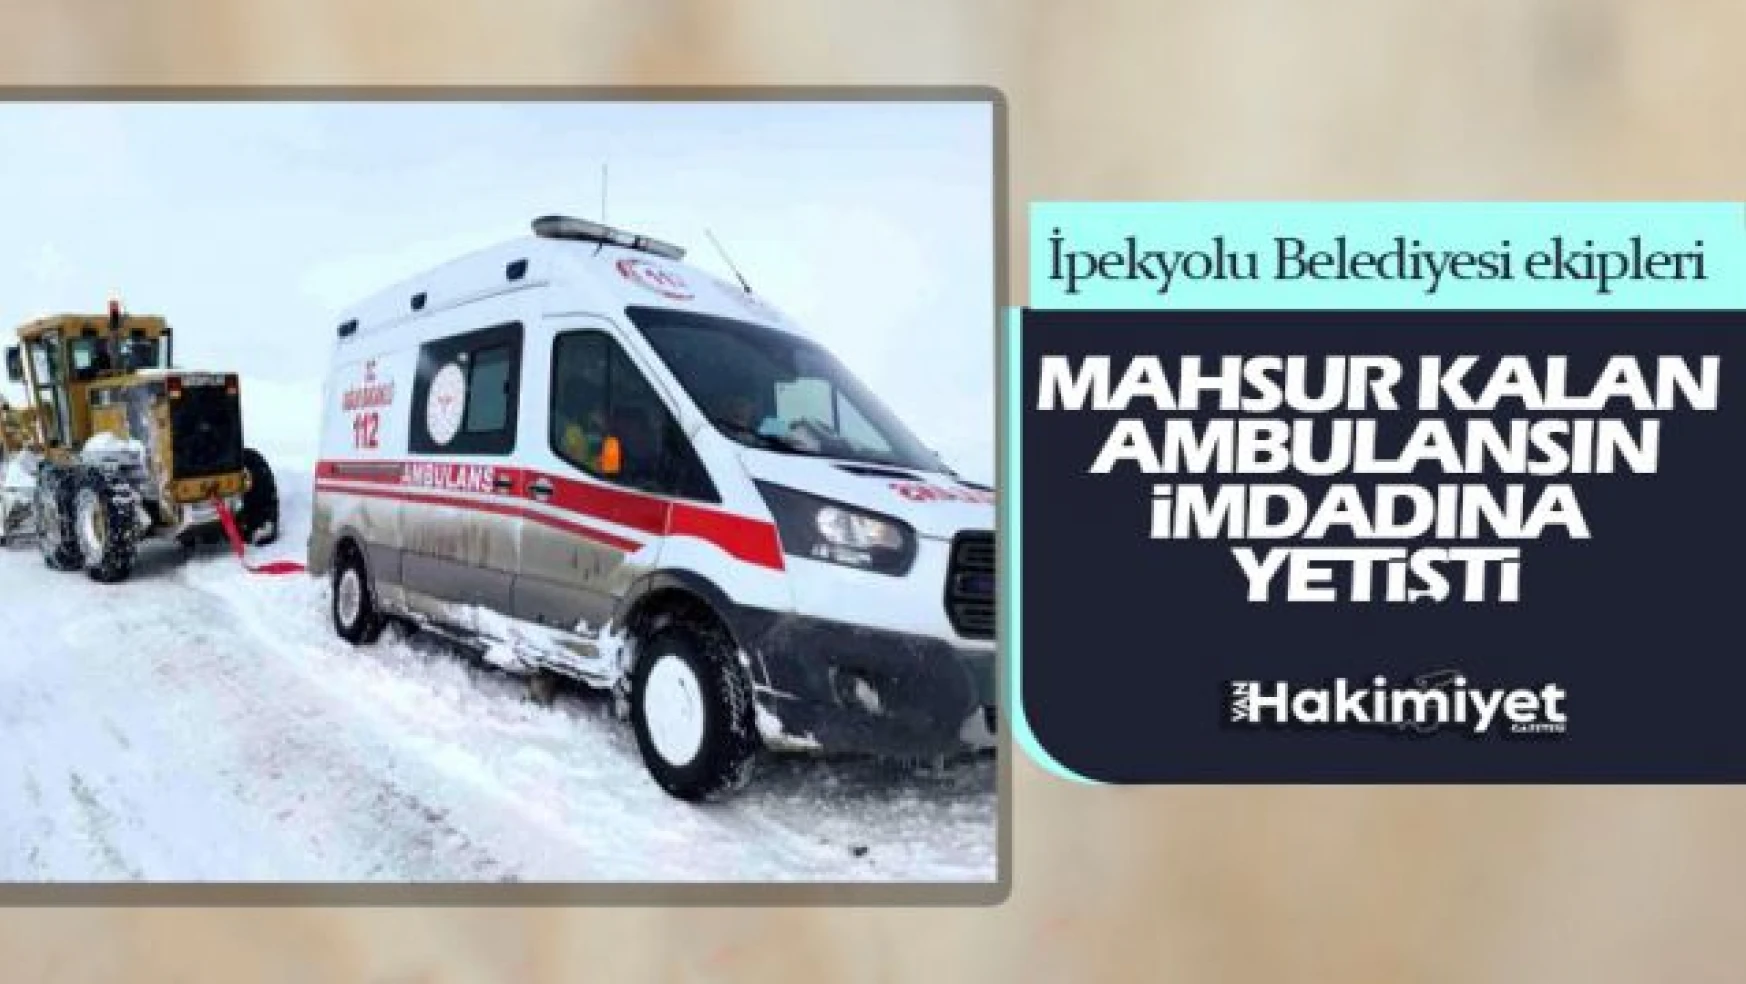 Van'da kara saplanan ambulansın imdadına İpekyolu Belediyesi yetişti